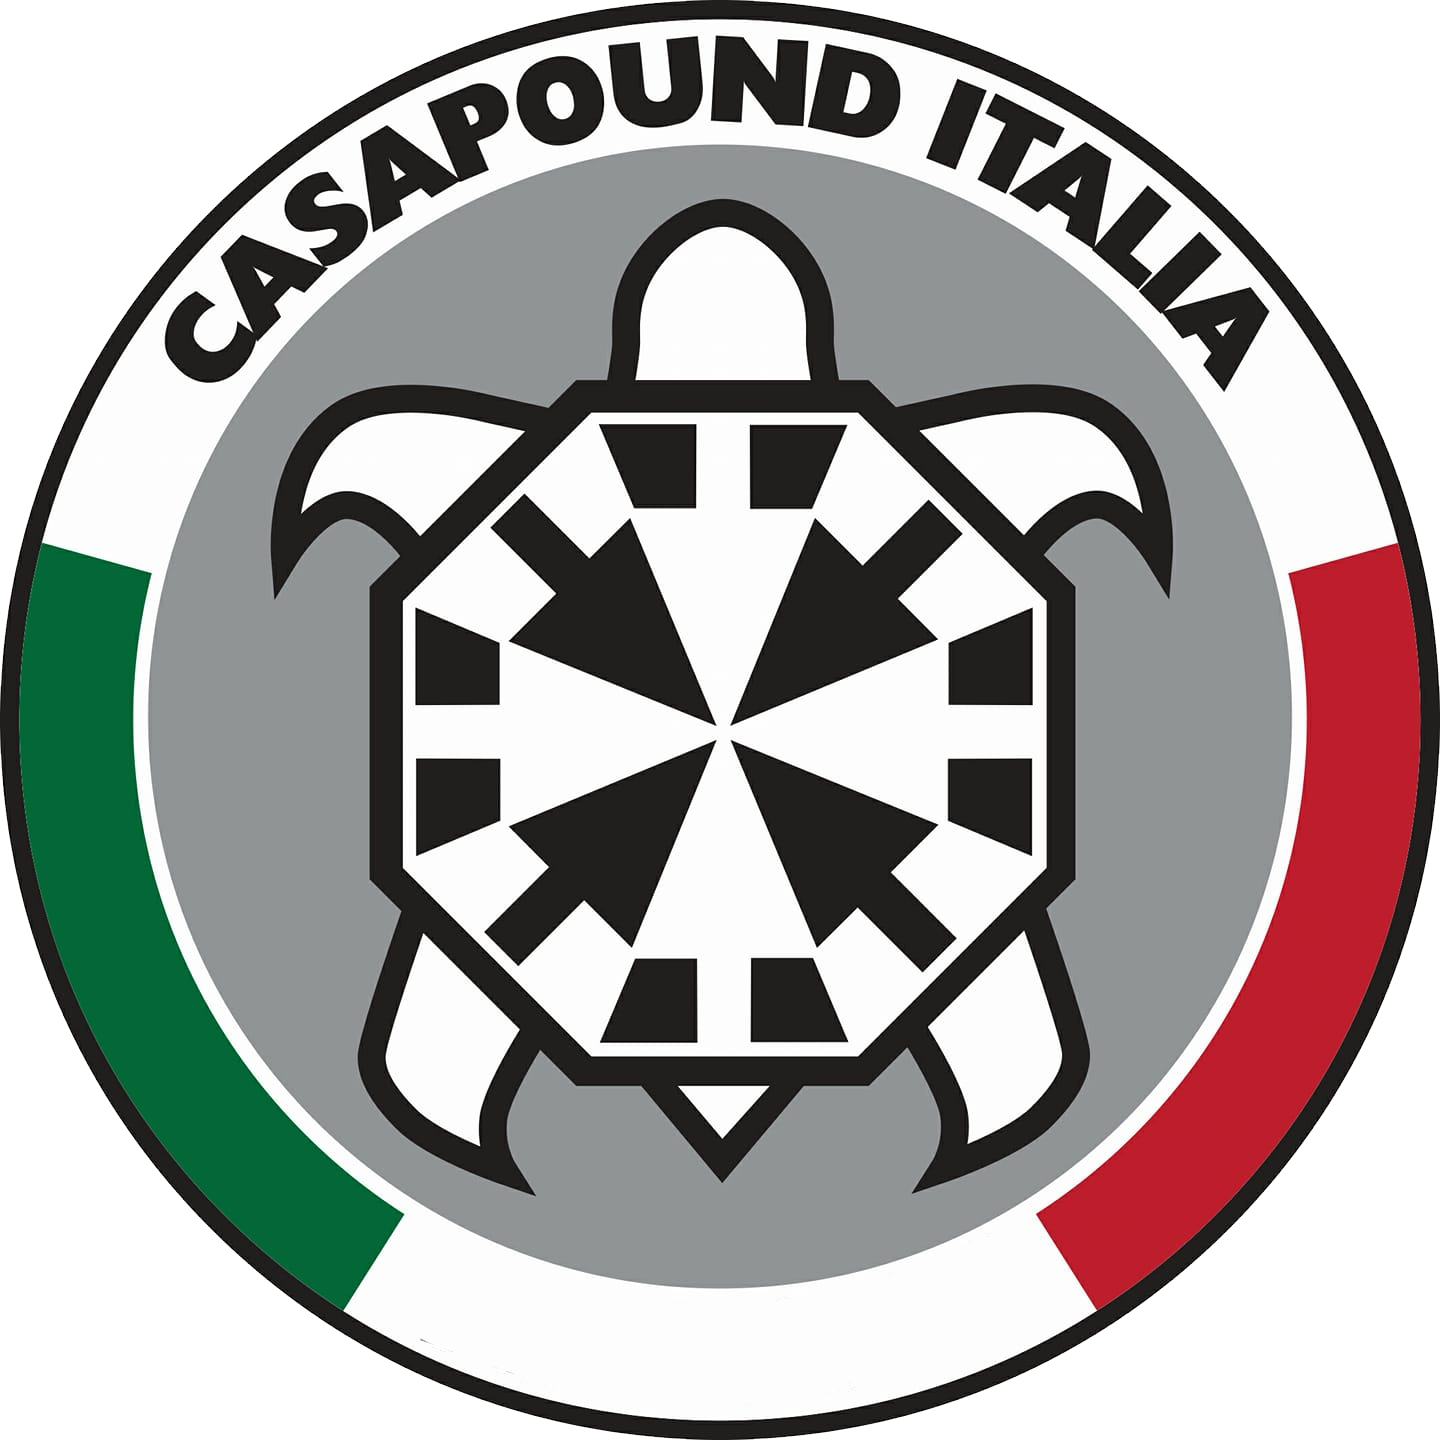 CasaPund Italia